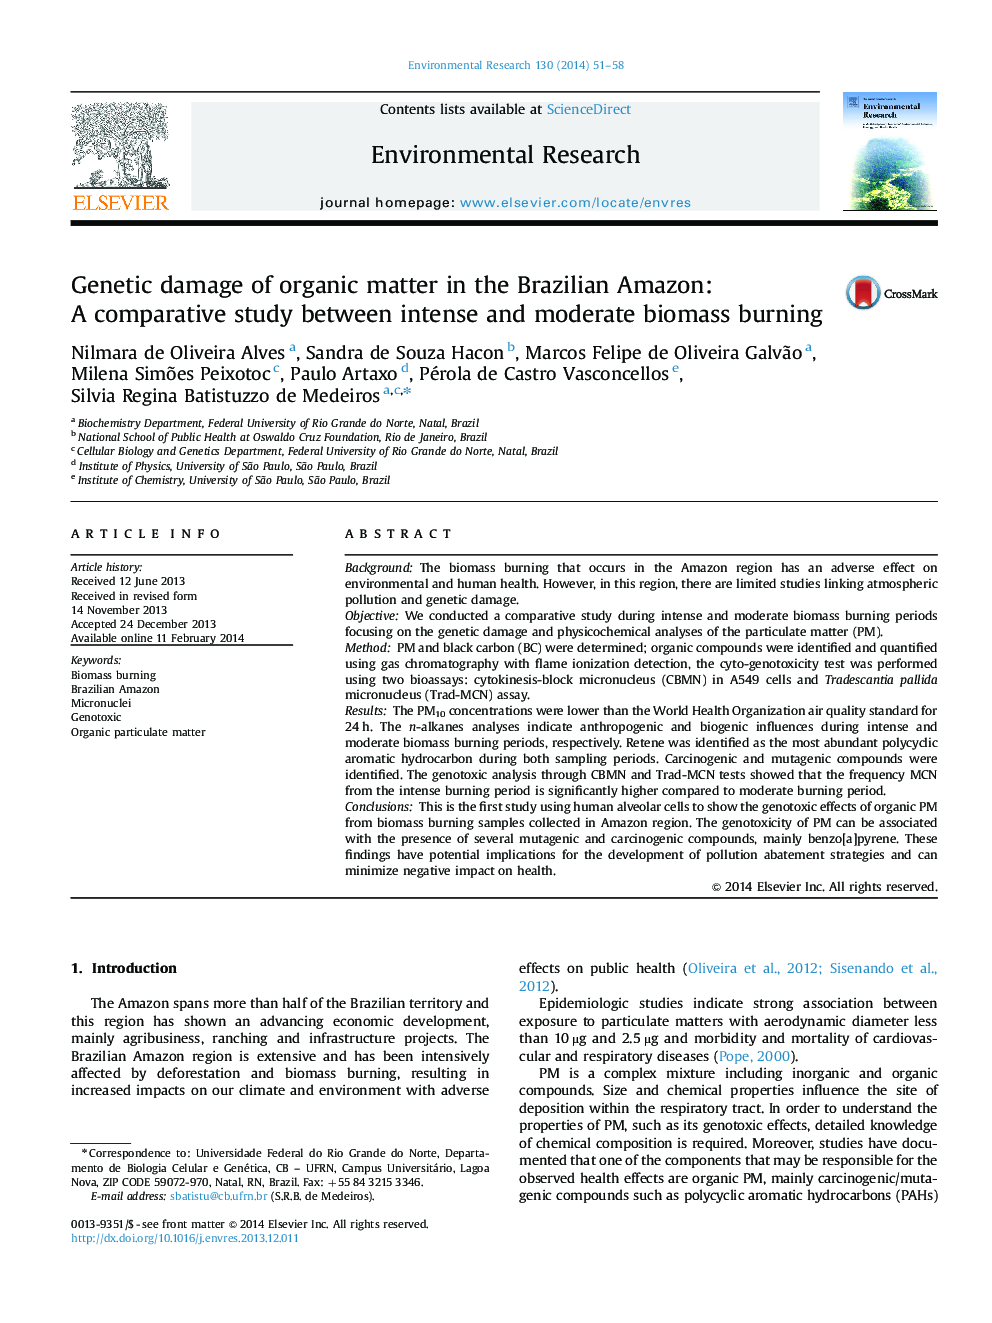 آسیب ژنتیکی مواد آلی در آمازون برزیل: مطالعه مقایسه ای بین سوختگی شدید و متوسط ​​زیست توده 